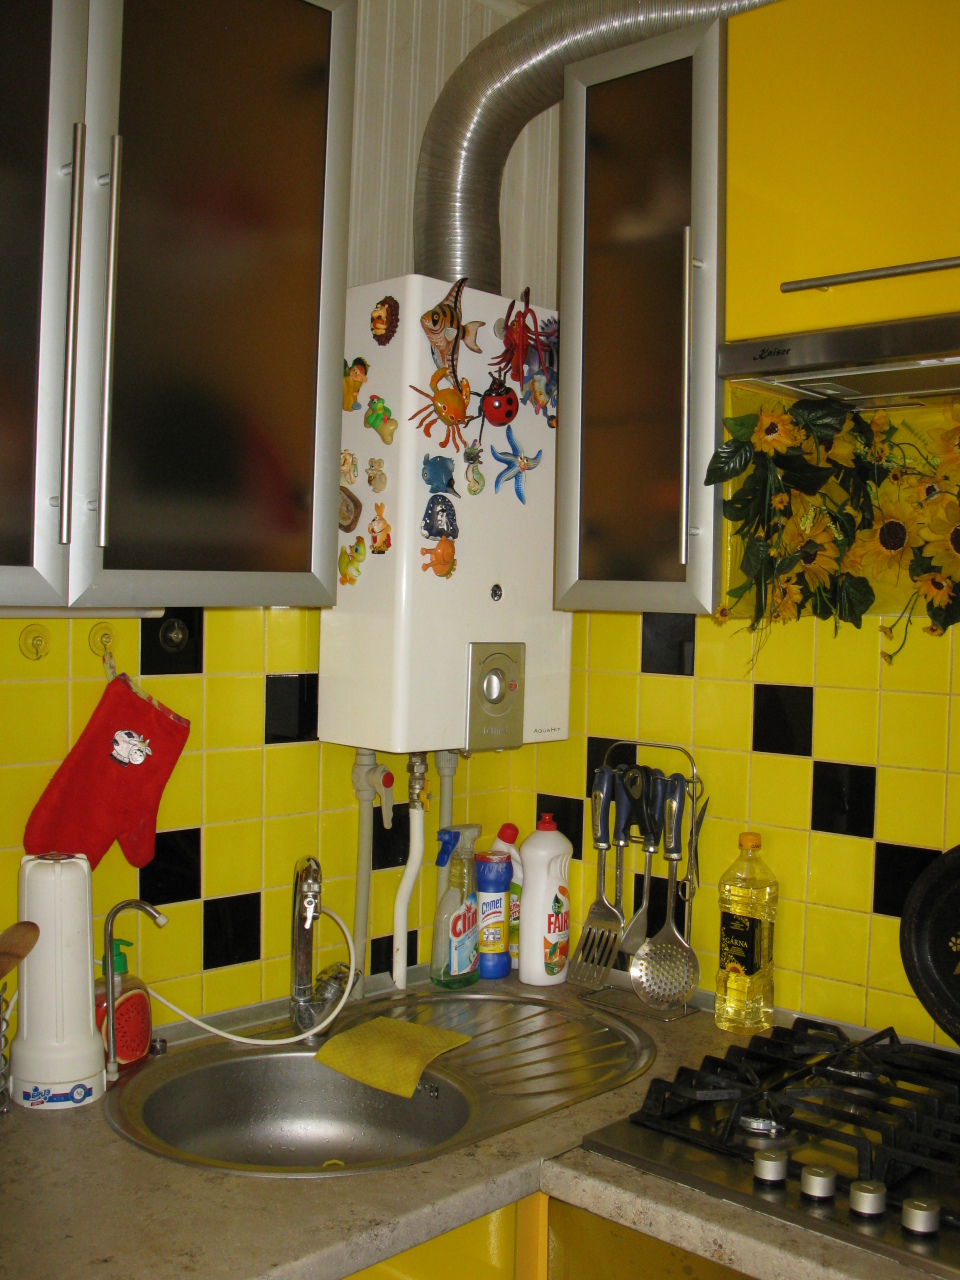 Желтая кухня 6 кв м